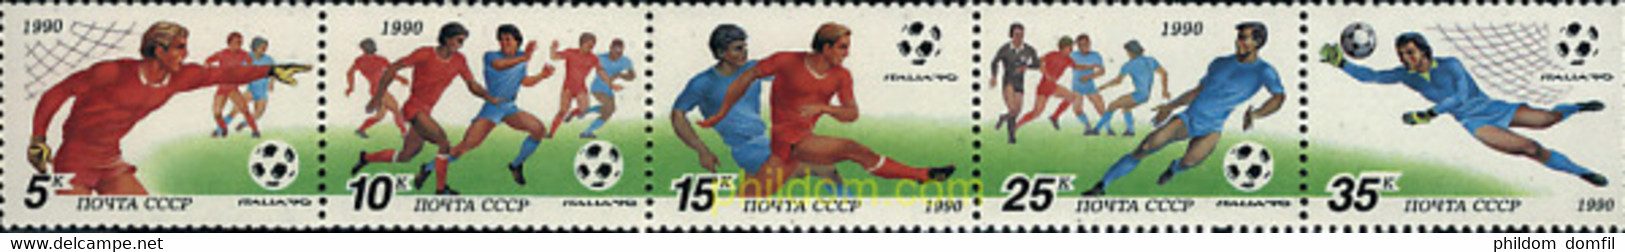 6650 MNH UNION SOVIETICA 1990 COPA DEL MUNDO DE FUTBOL. ITALIA-90 - Colecciones